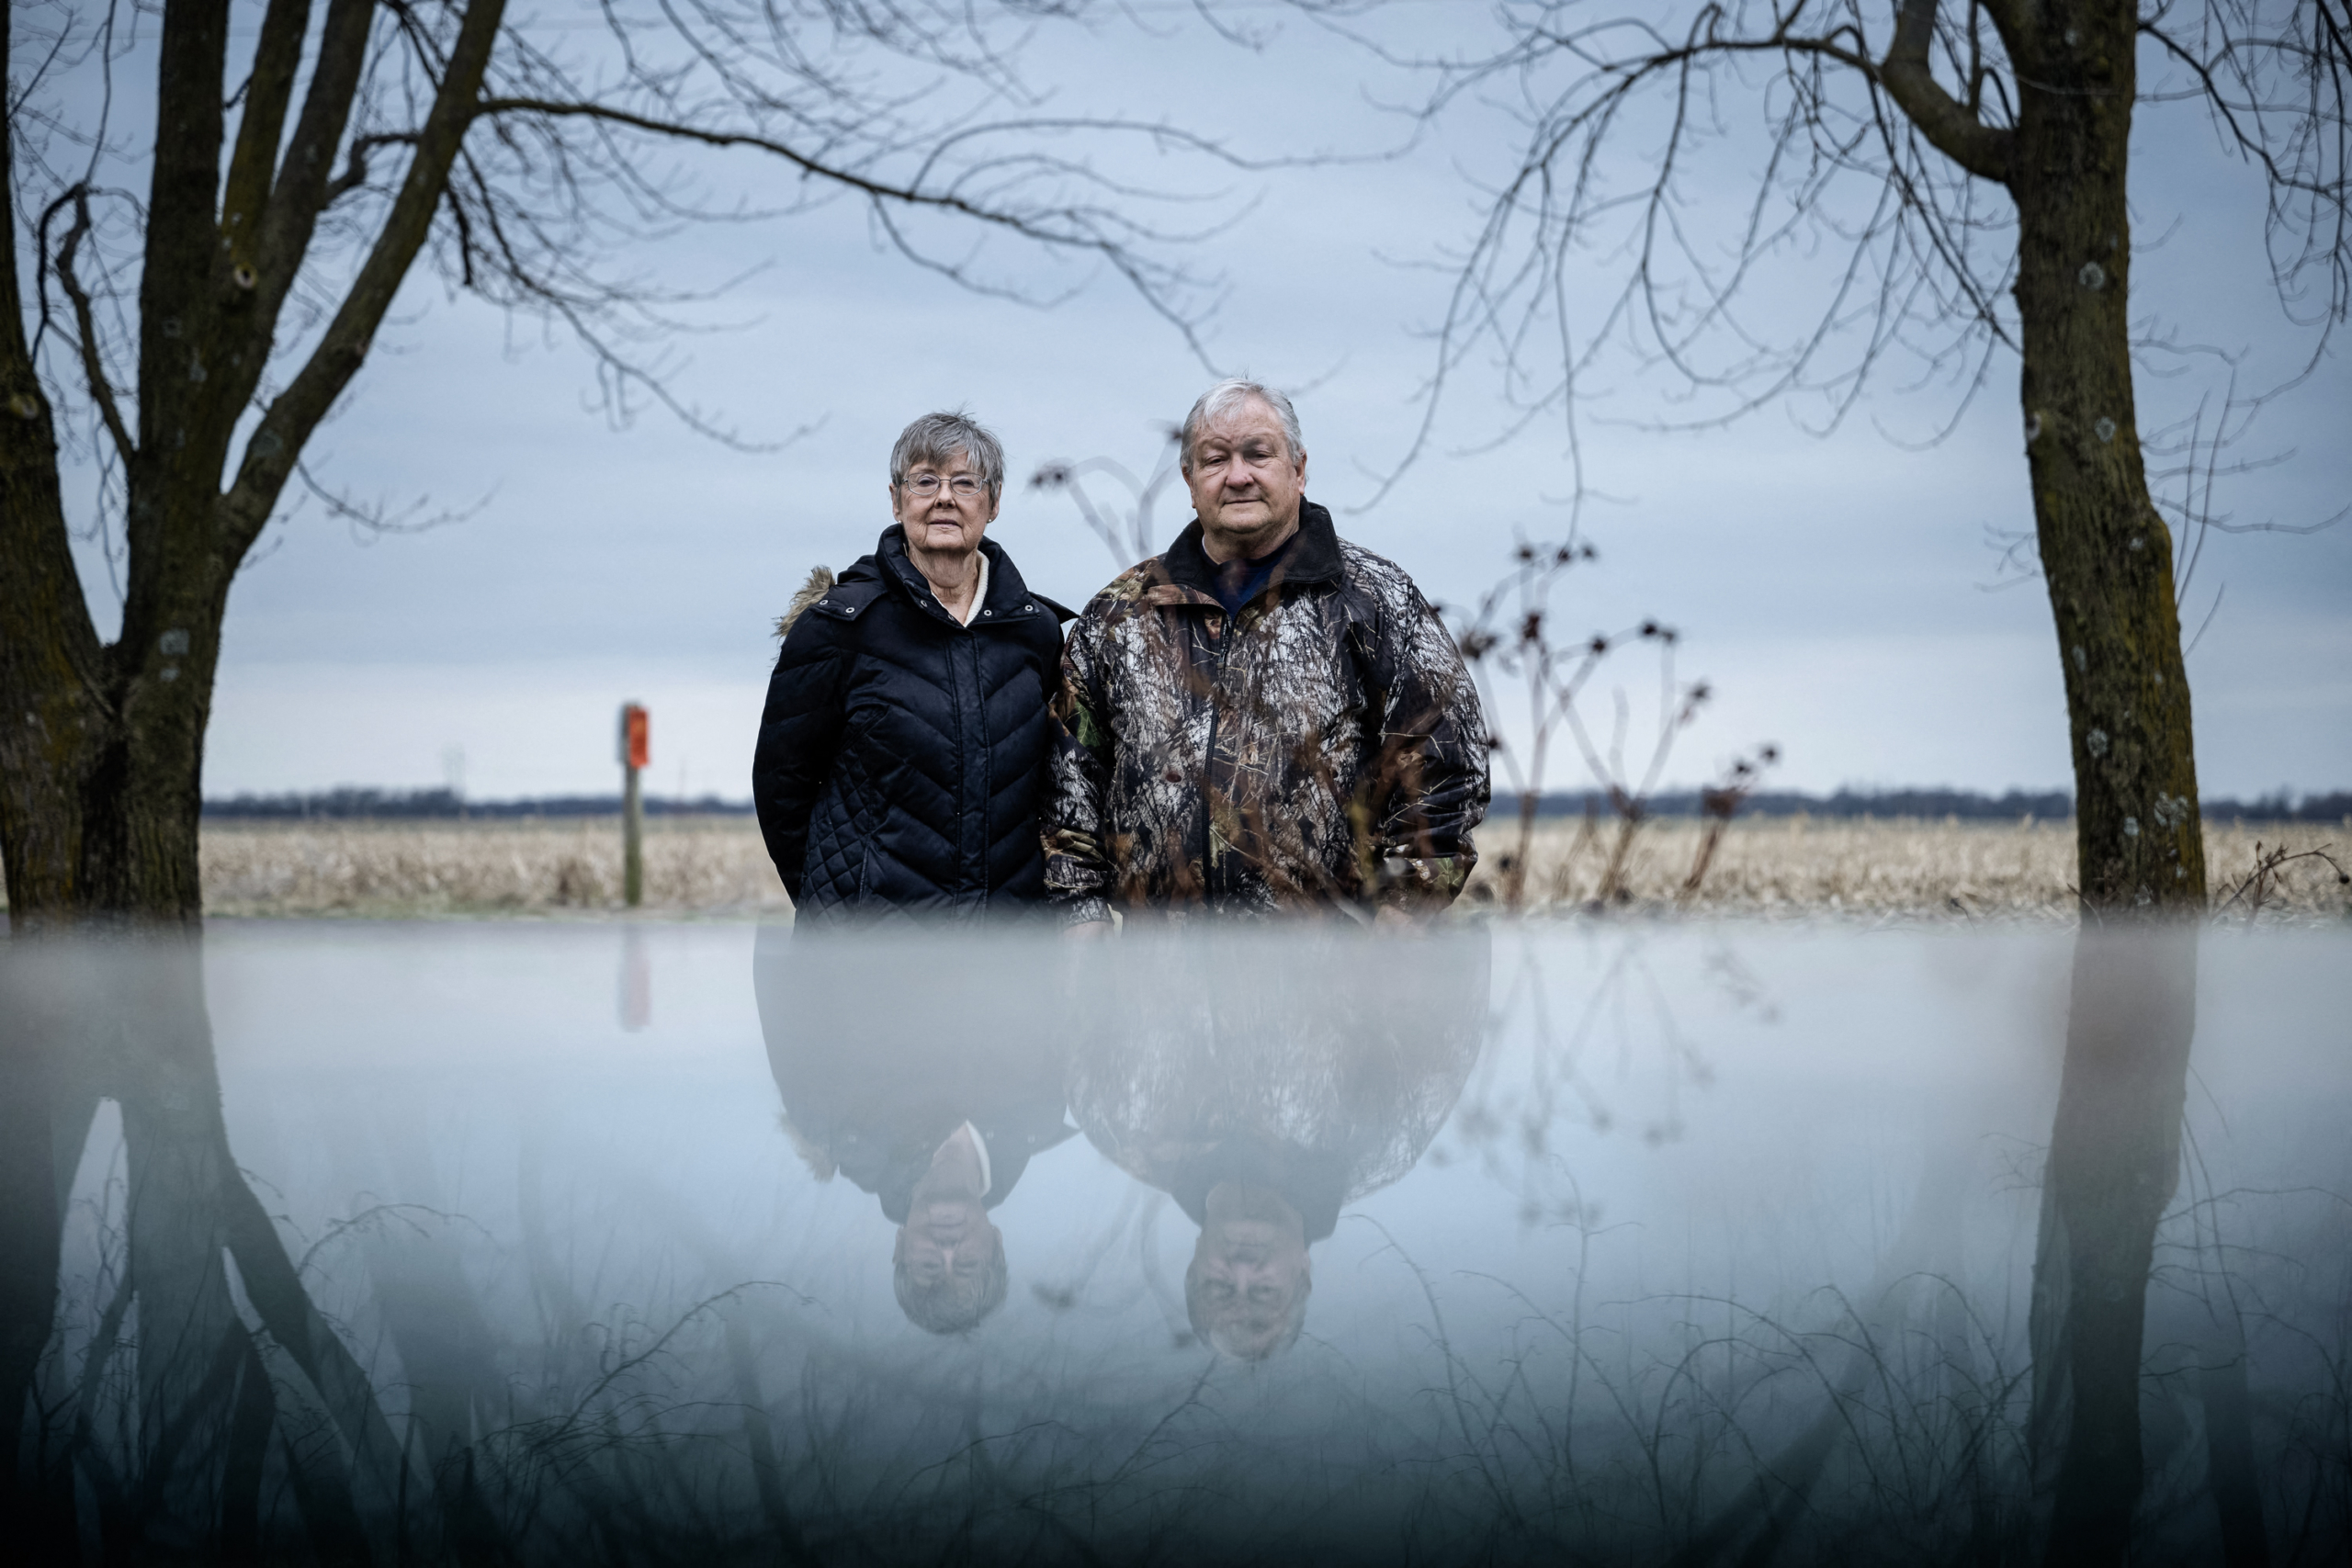 Bà Susan Burns và chồng, ông John Burns, ở khu đất phía trước của gia đình họ vốn đã có từ năm 1890, đối diện với khu đất được thuê để sản xuất quang năng ở Hereford, Missouri, hôm 16/03/2023. (Ảnh: Brendan Smialowski/AFP qua Getty Images)